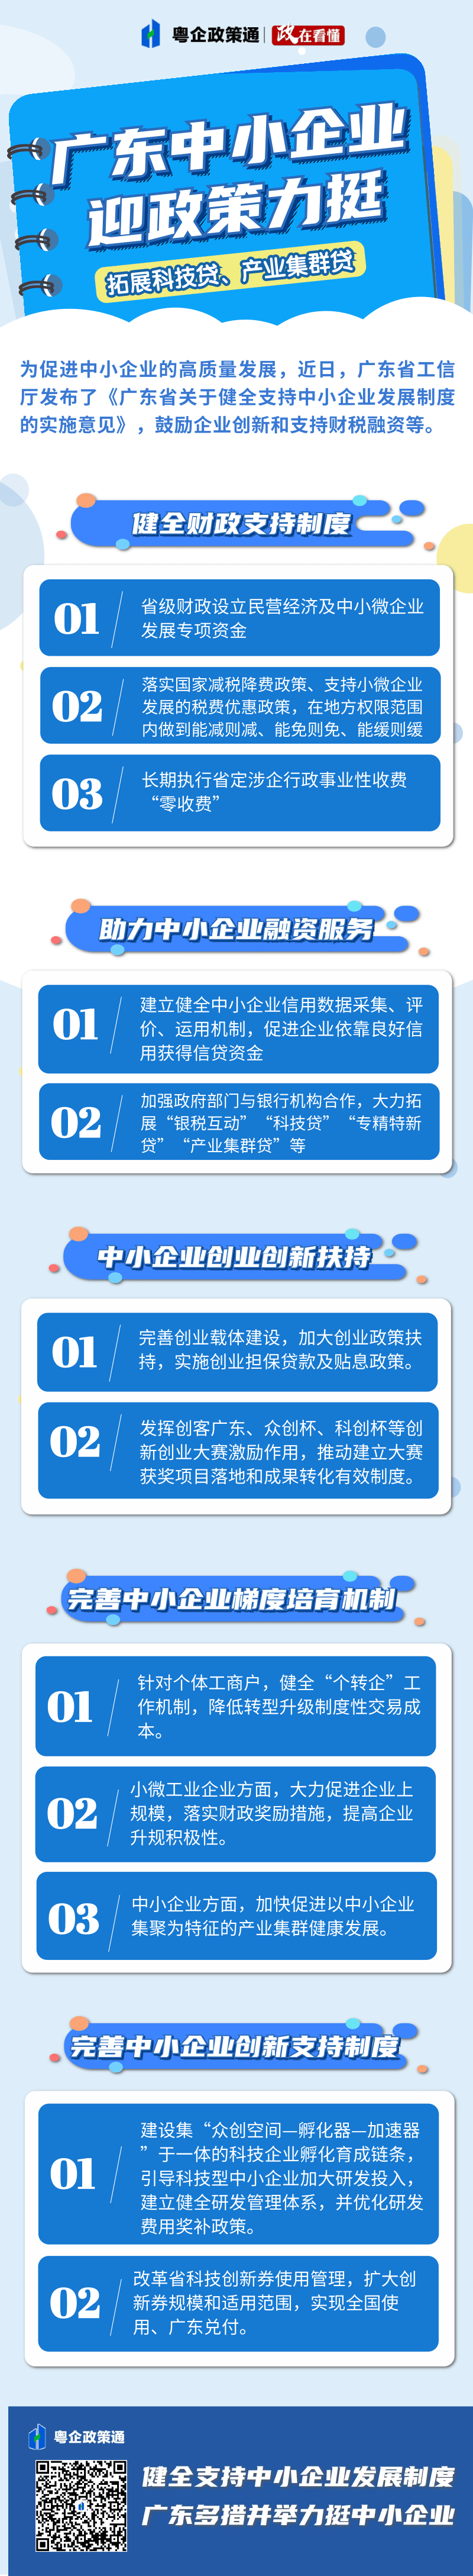 简约0基础编程课程培训宣传长图海报 (1).png